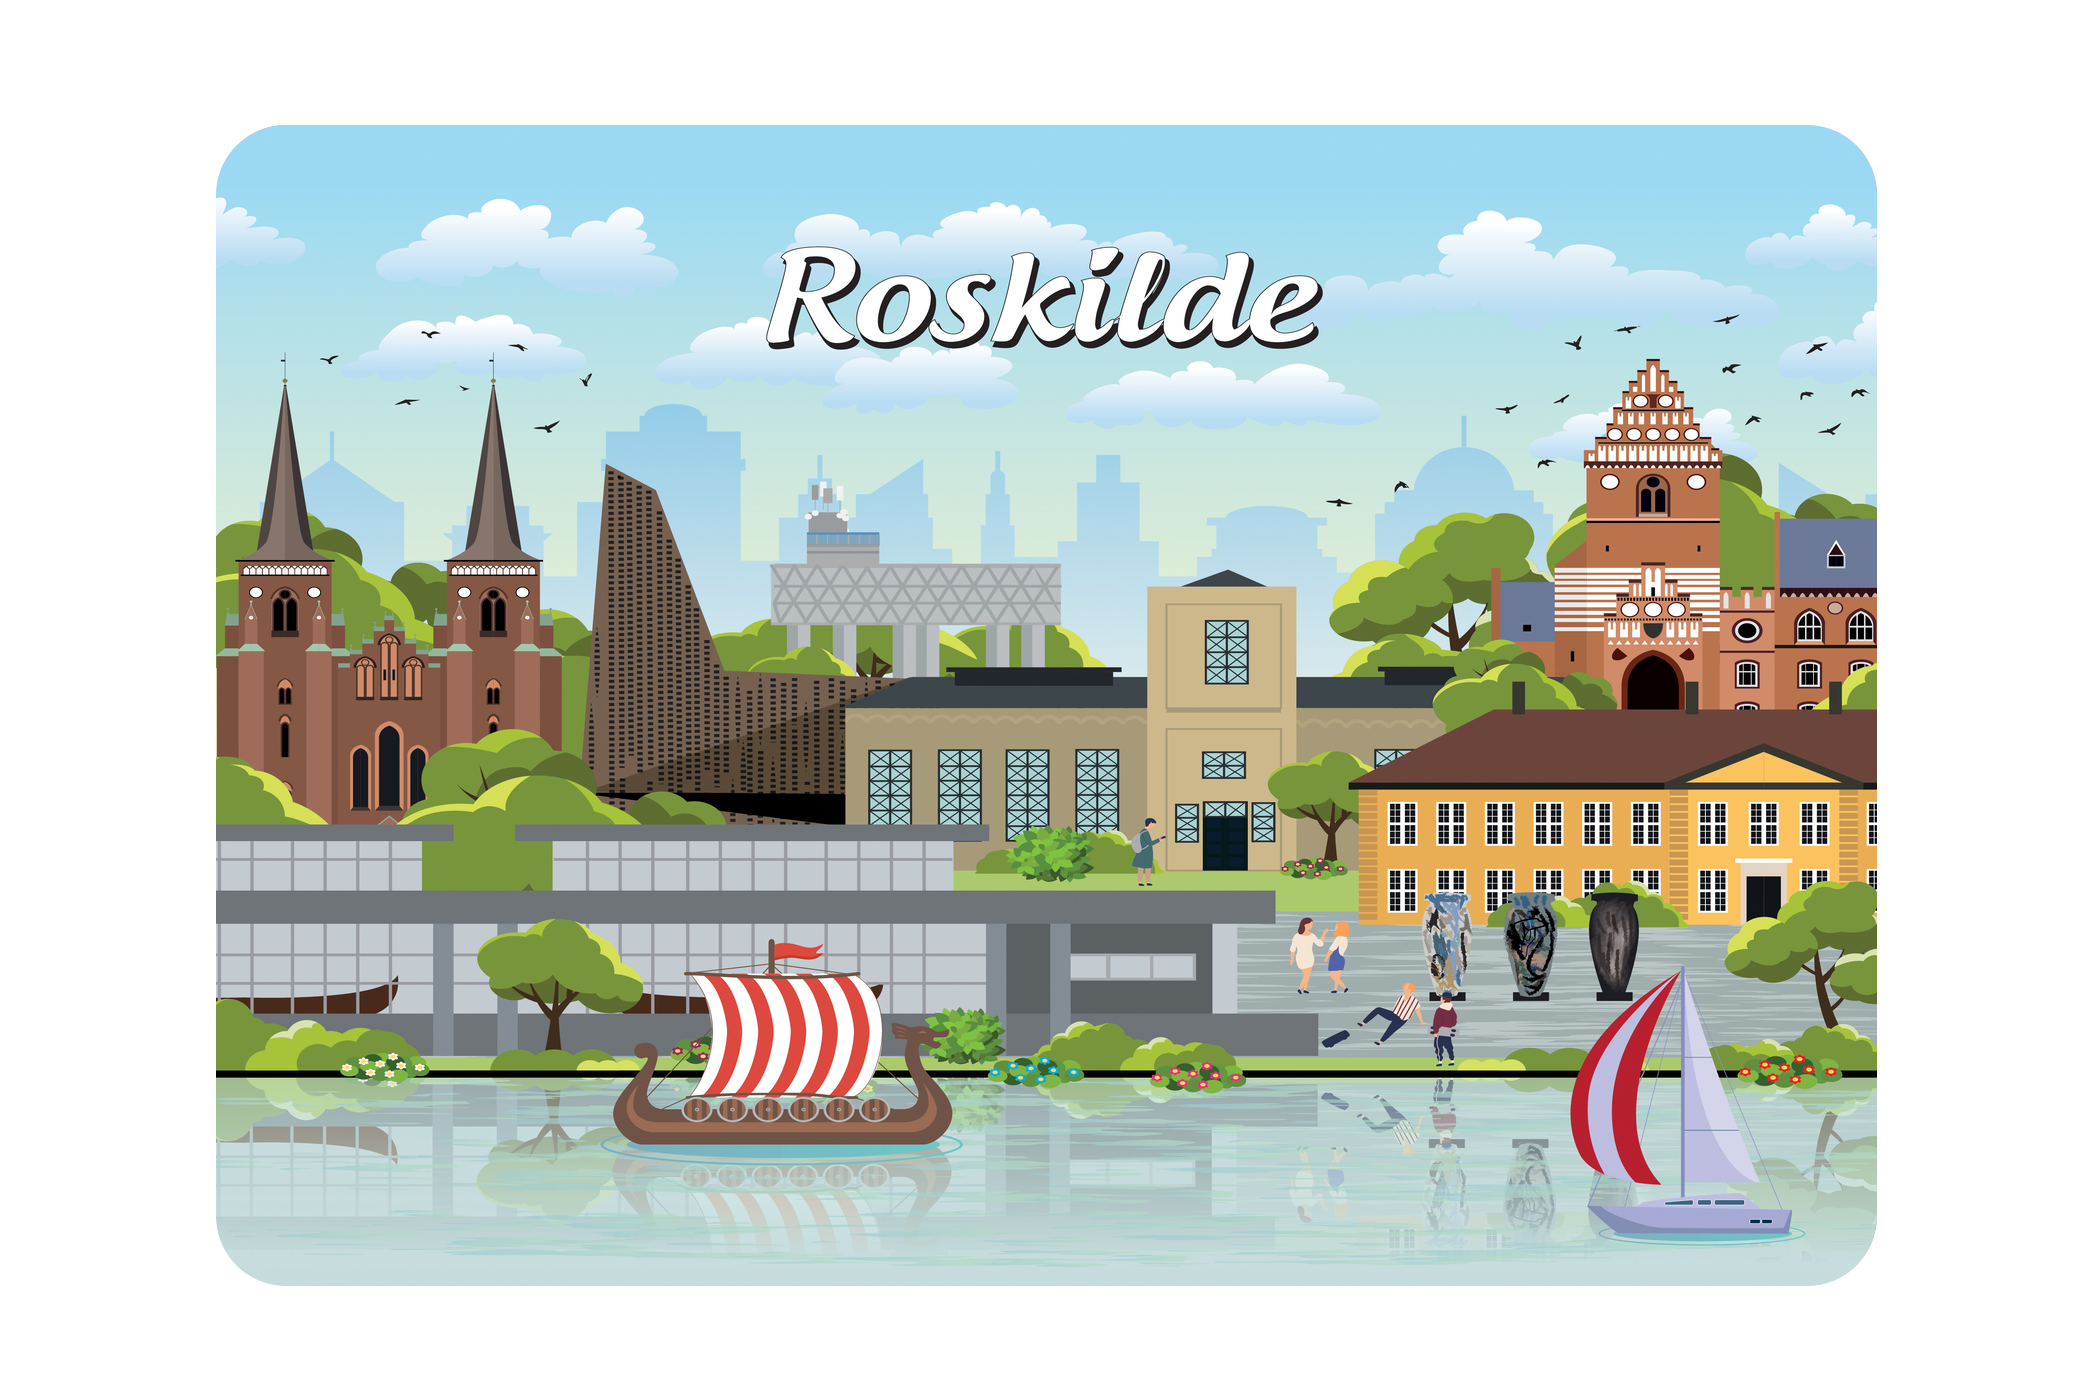 Roskilde - Bykoncept